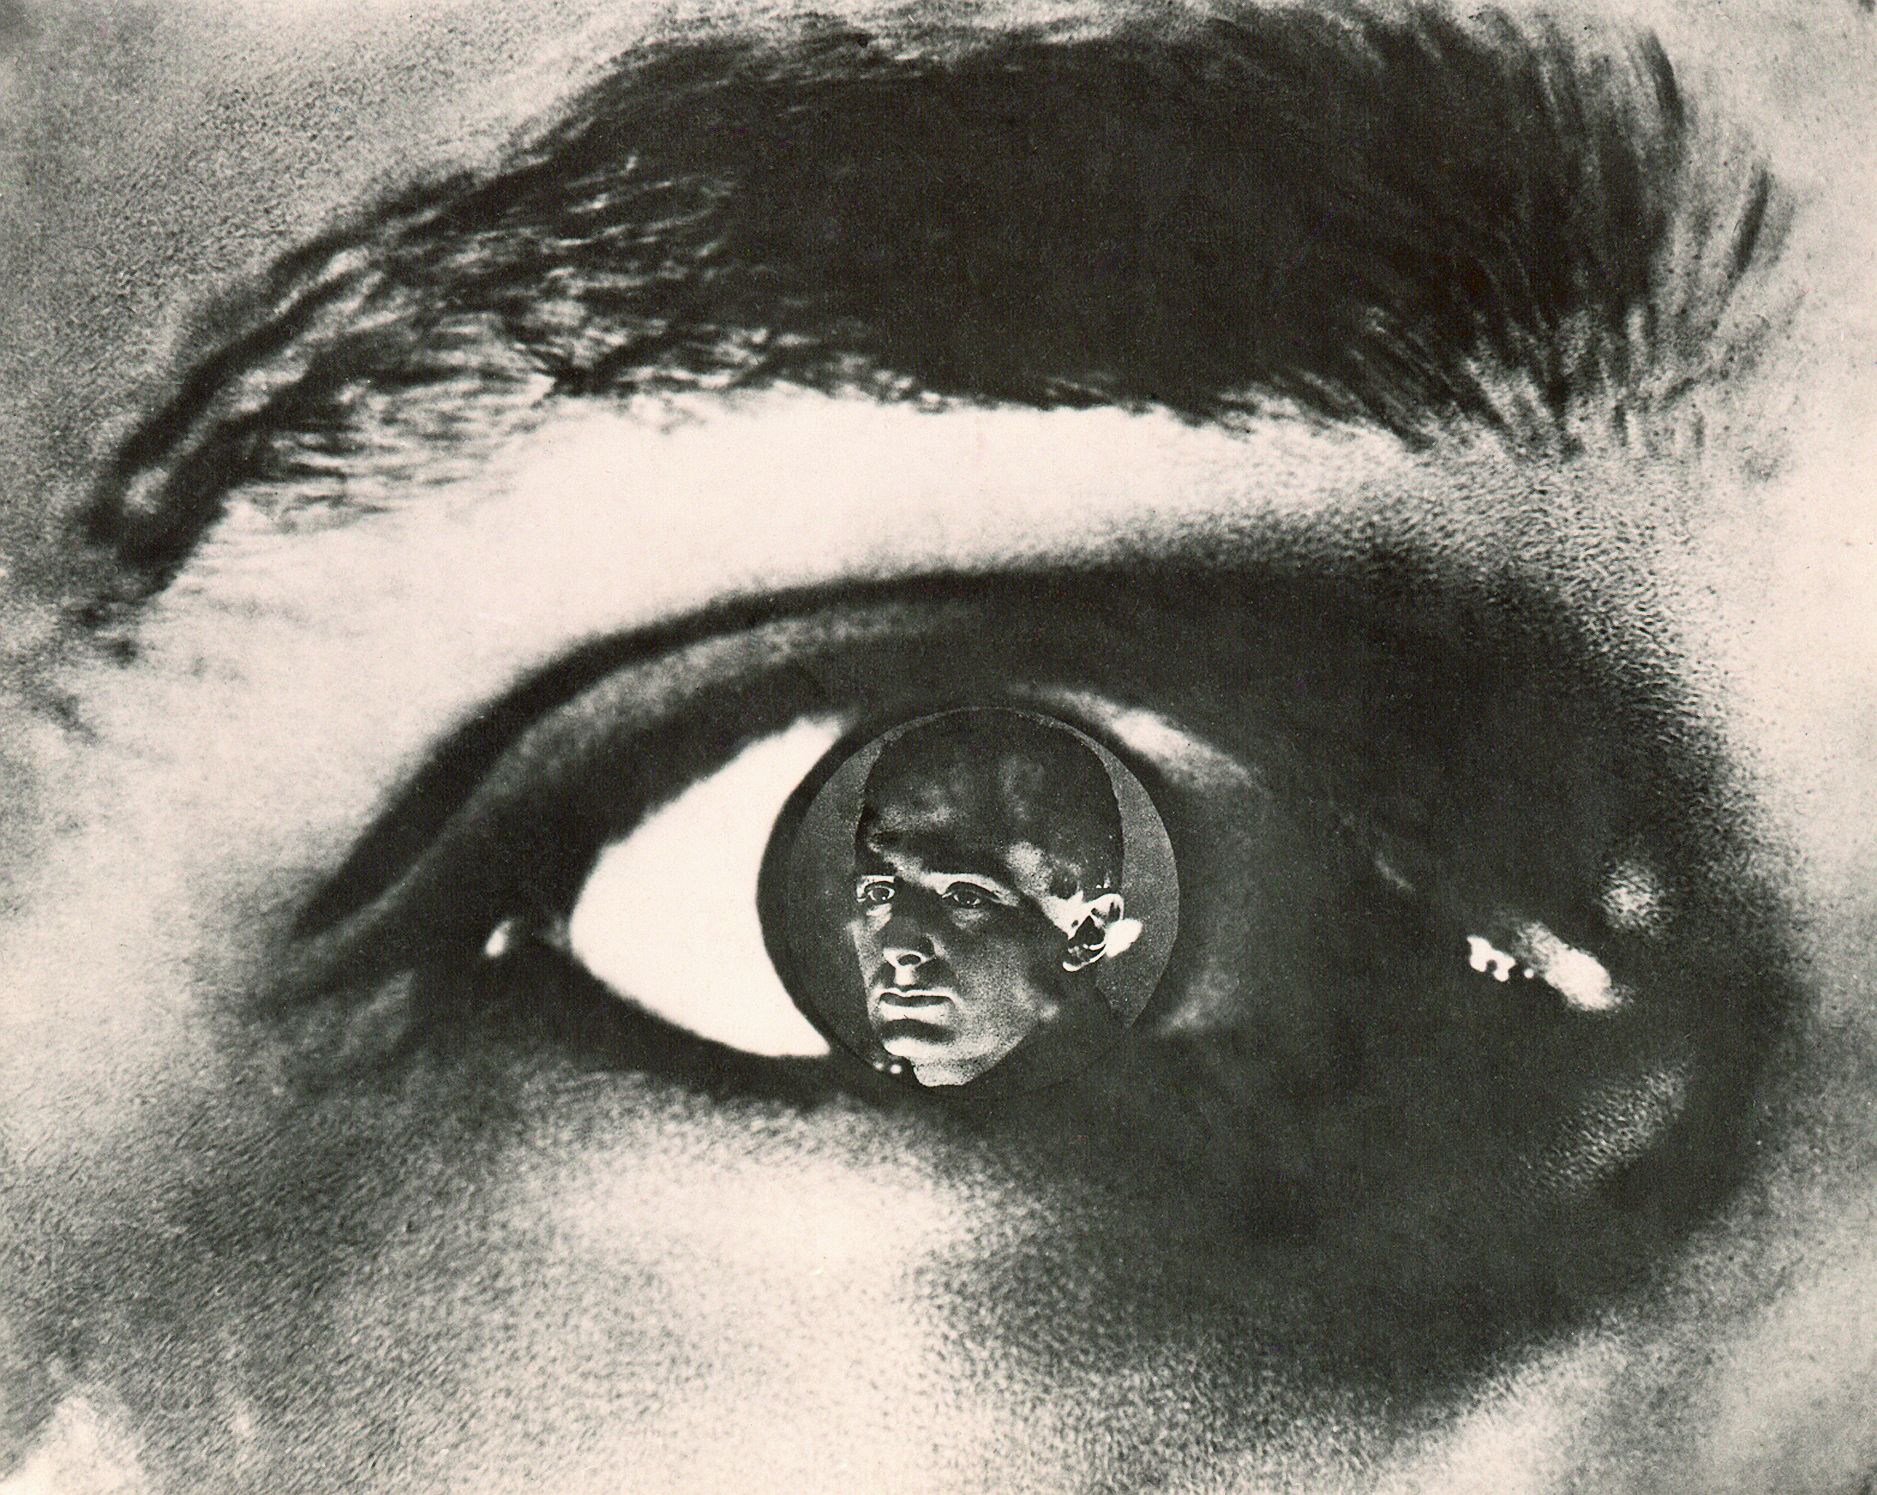 Elizaveta Svilovas Auge, in dessen Pupille Vertovs Porträt erscheint (Fotomontage, 1931?)